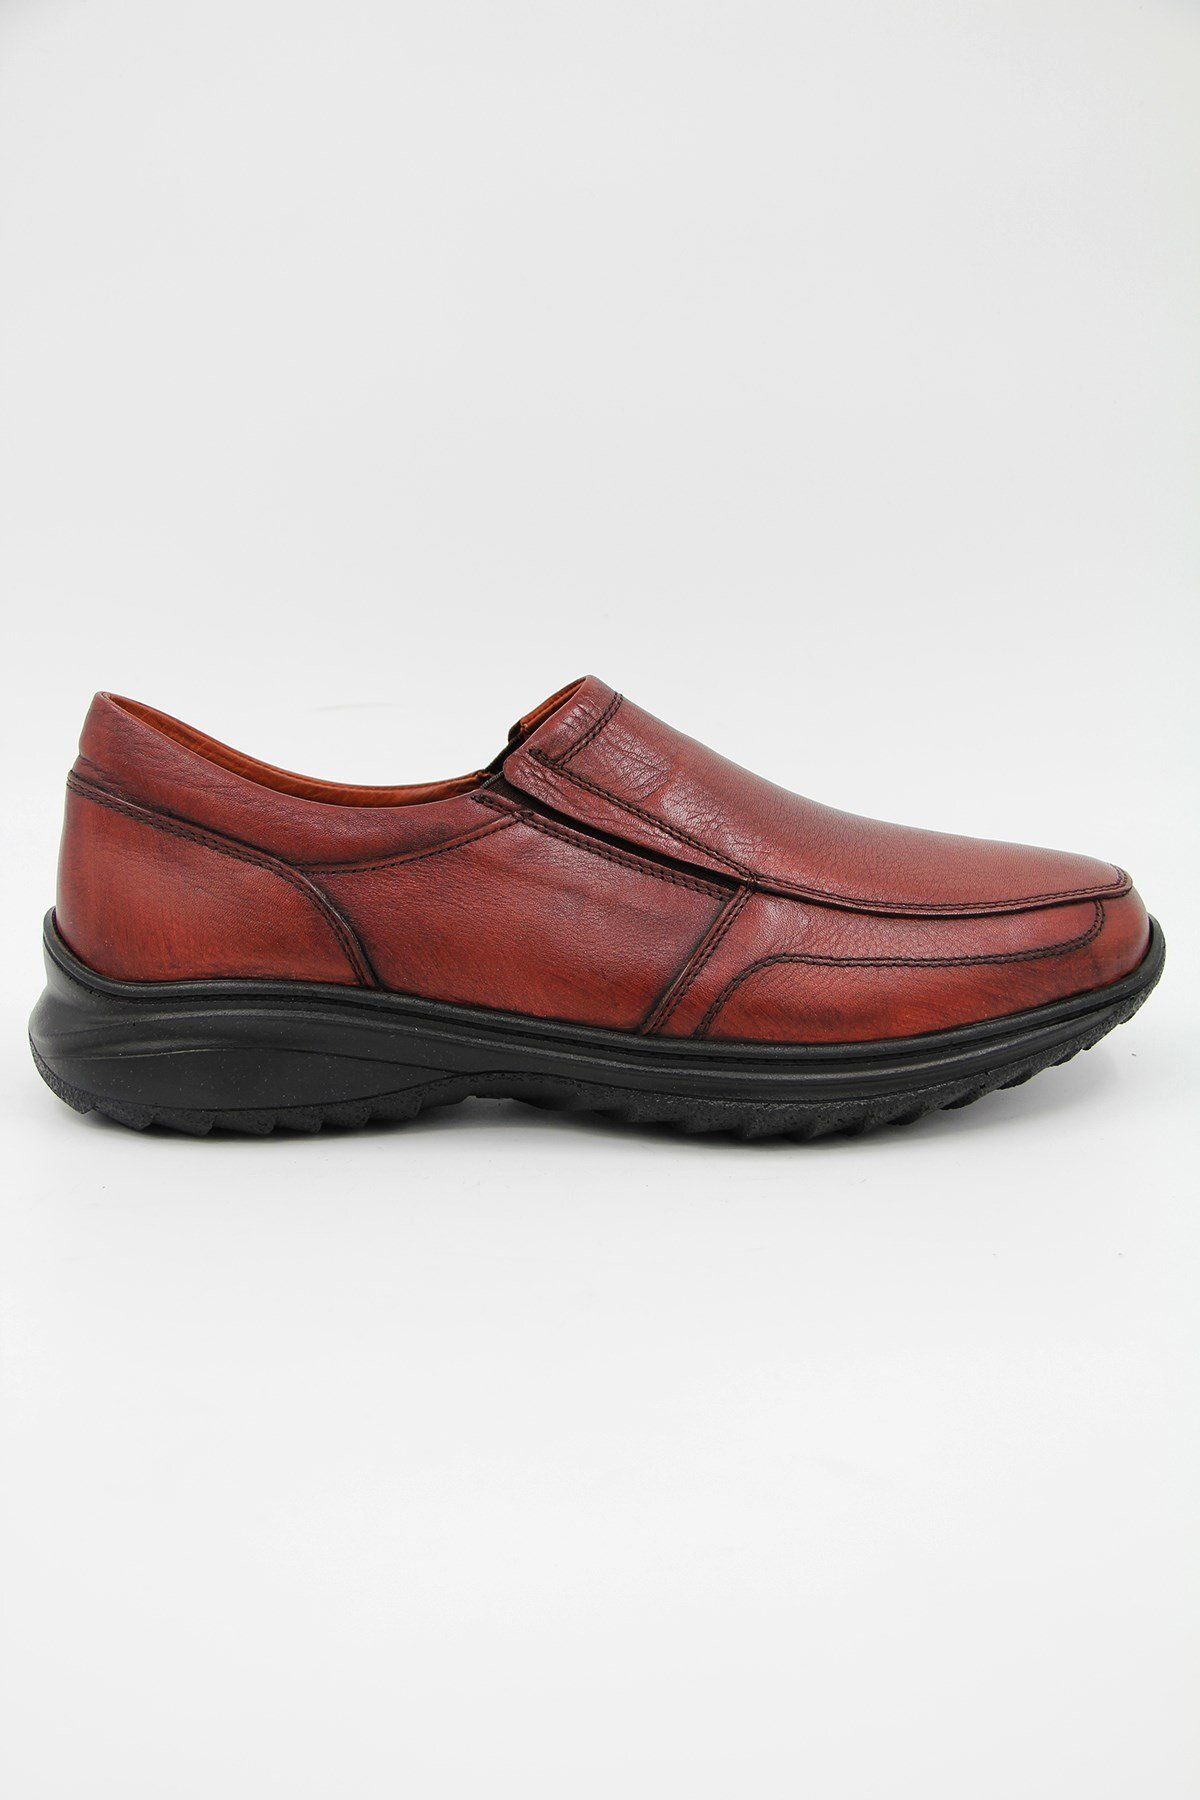 DANACI Danacı 881 Erkek Klasik Ayakkabı - Kahverengi